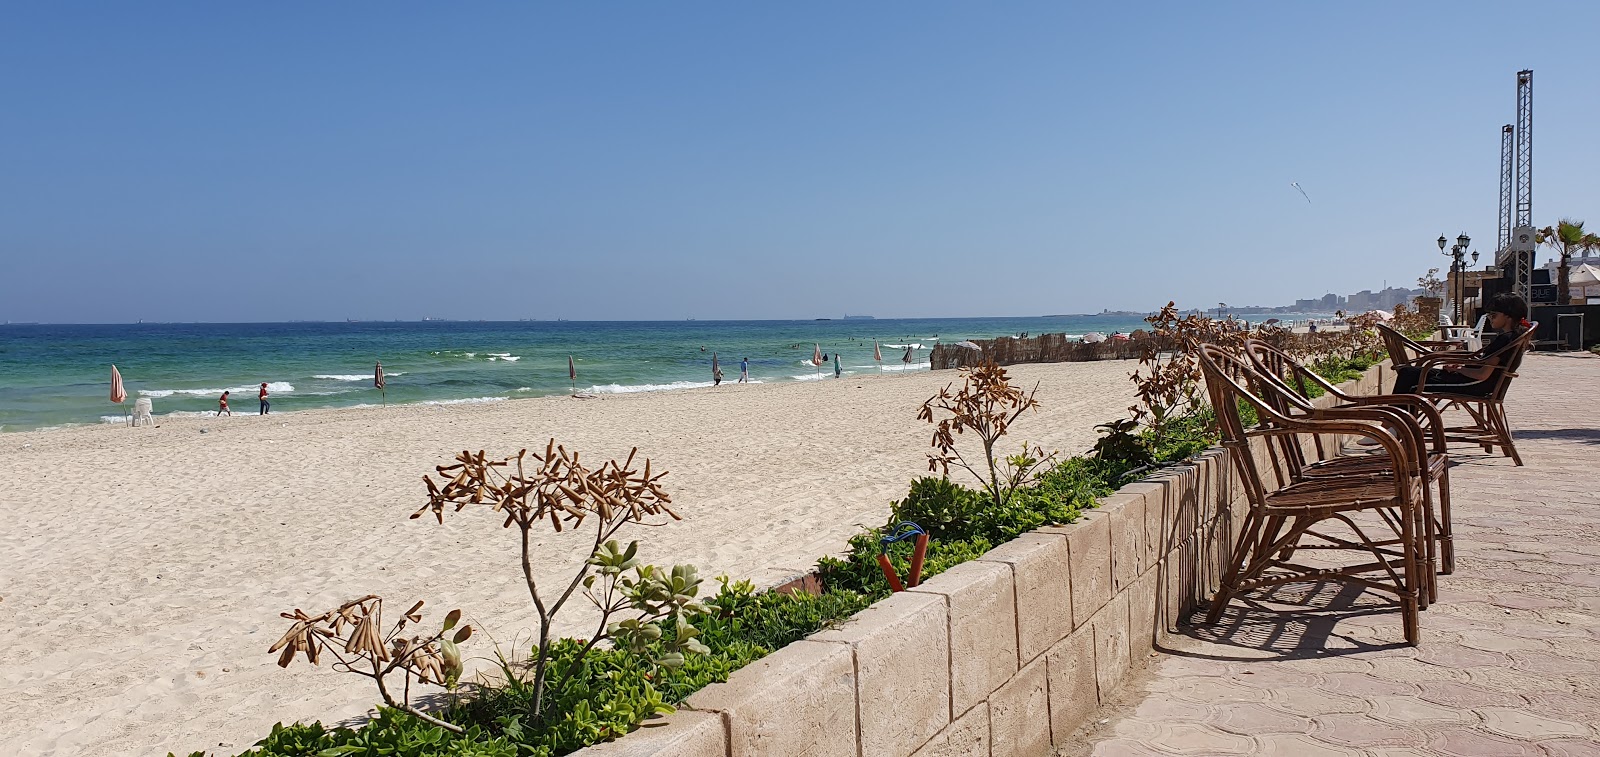 Fotografie cu Al-Ajami Beach - locul popular printre cunoscătorii de relaxare